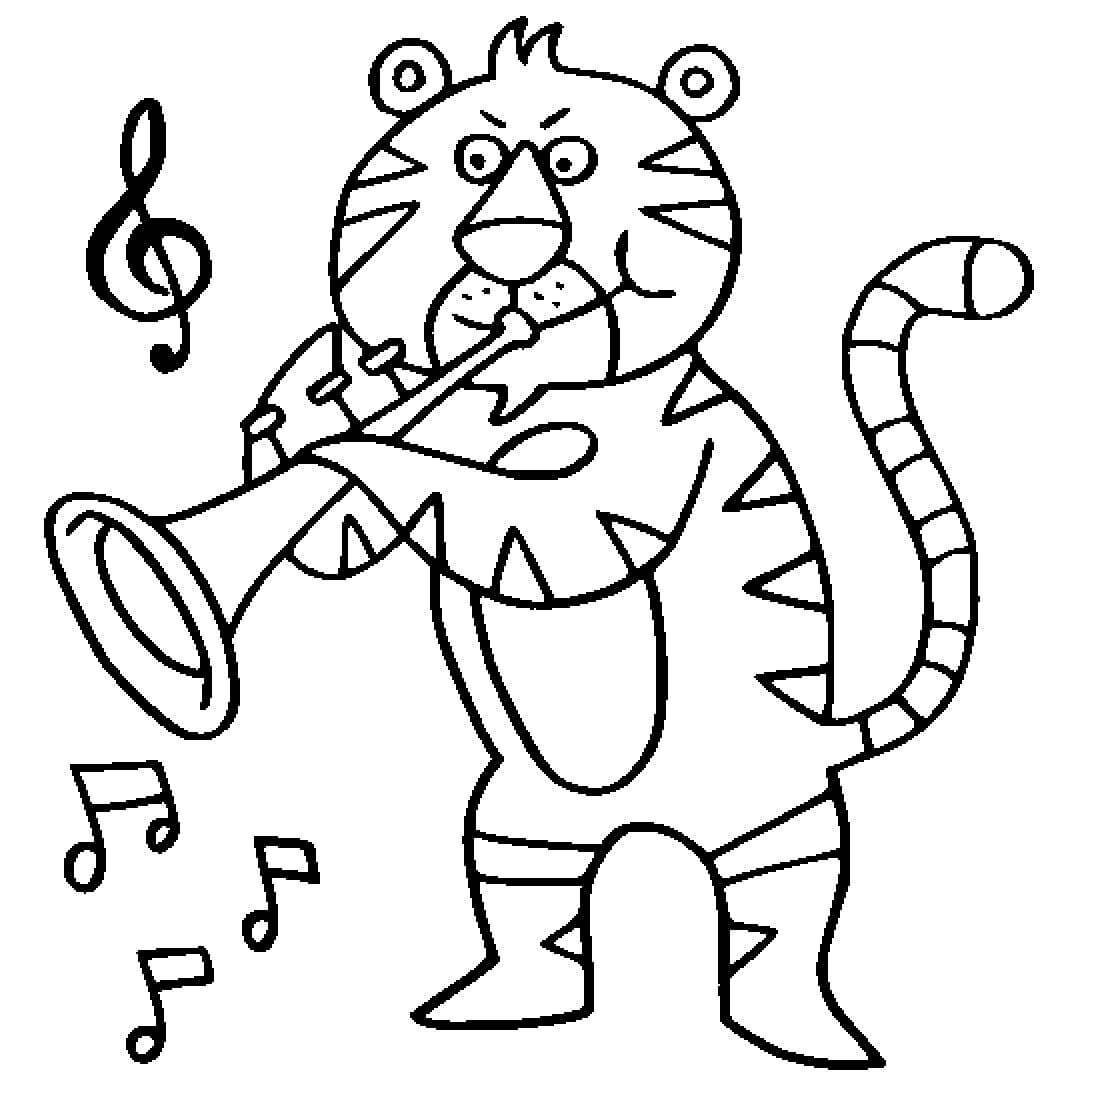 트럼펫을 연주하는 호랑이 그림